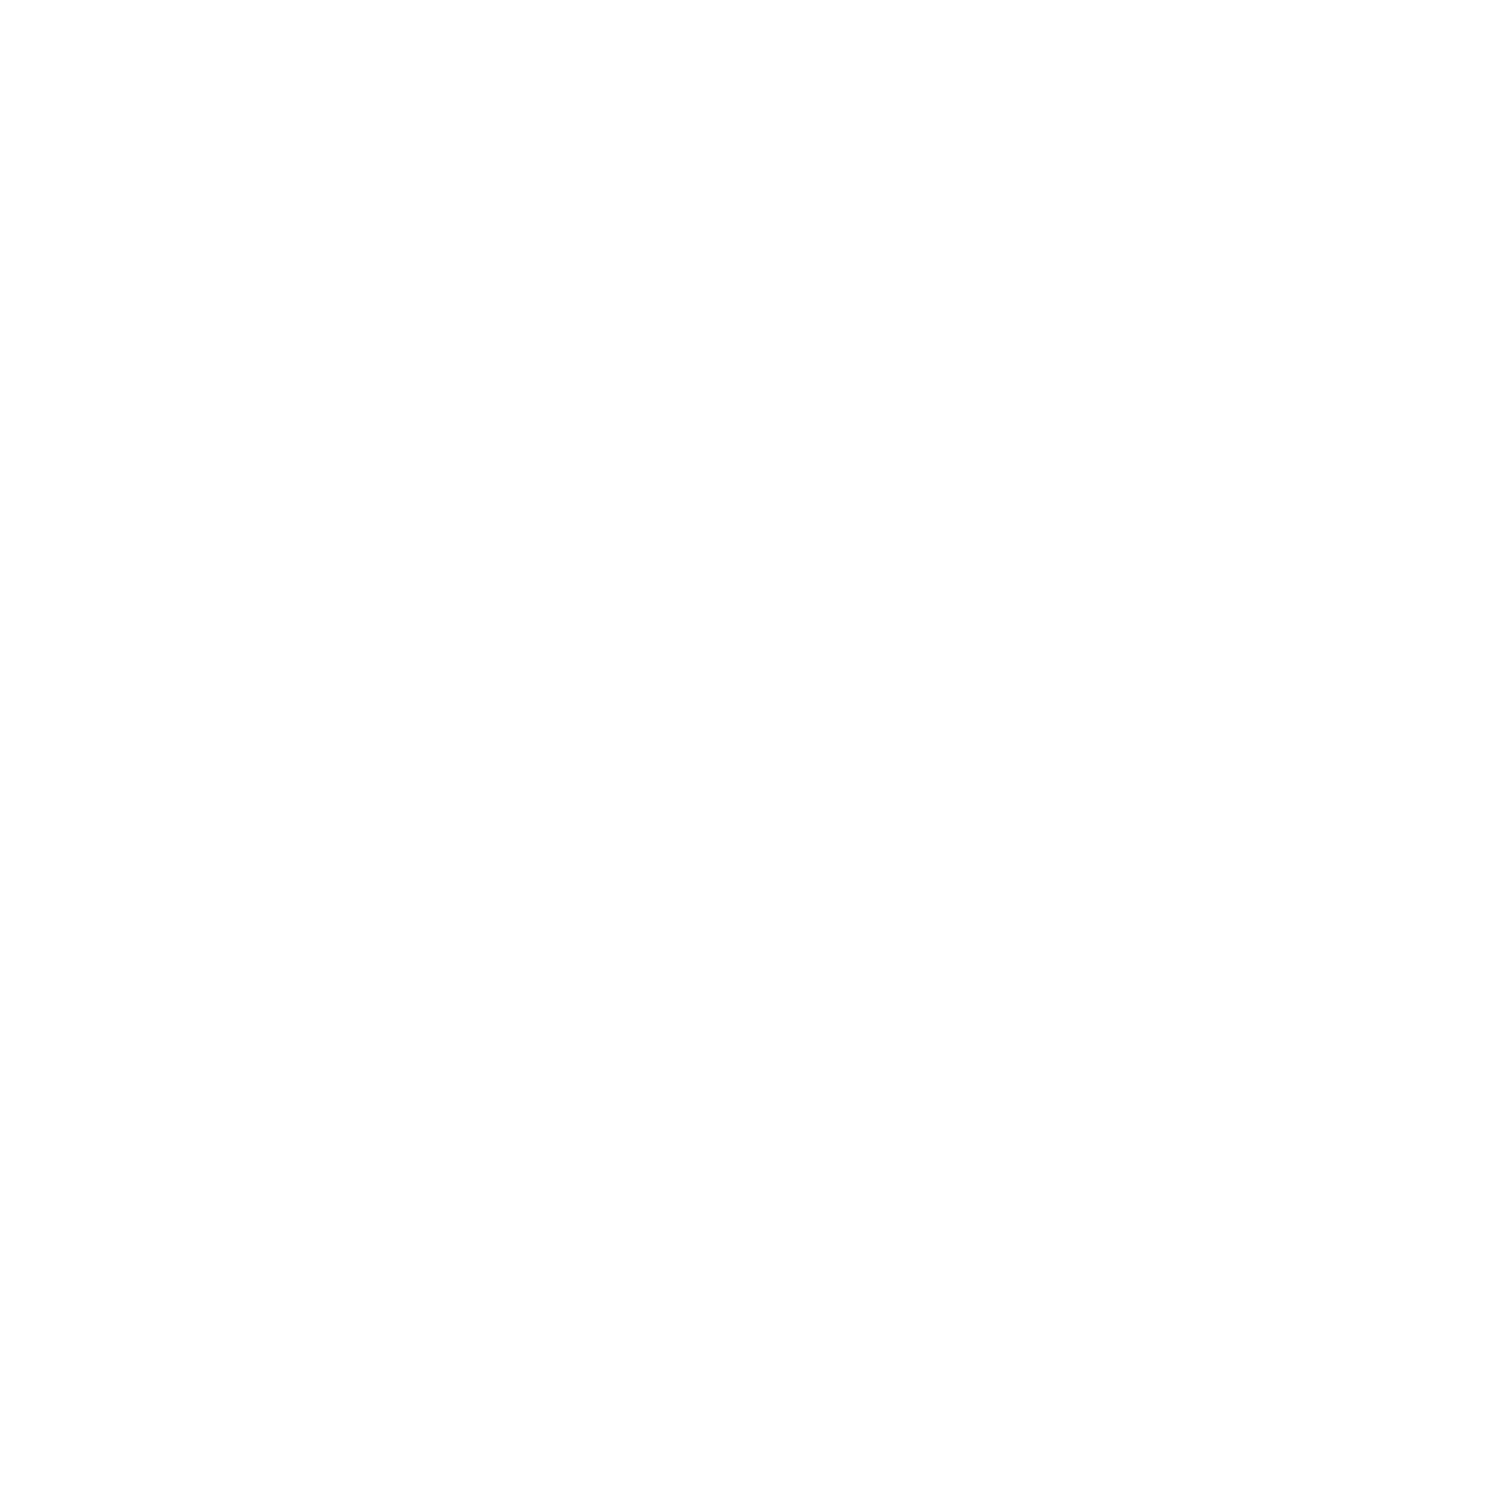 Shutter Freak